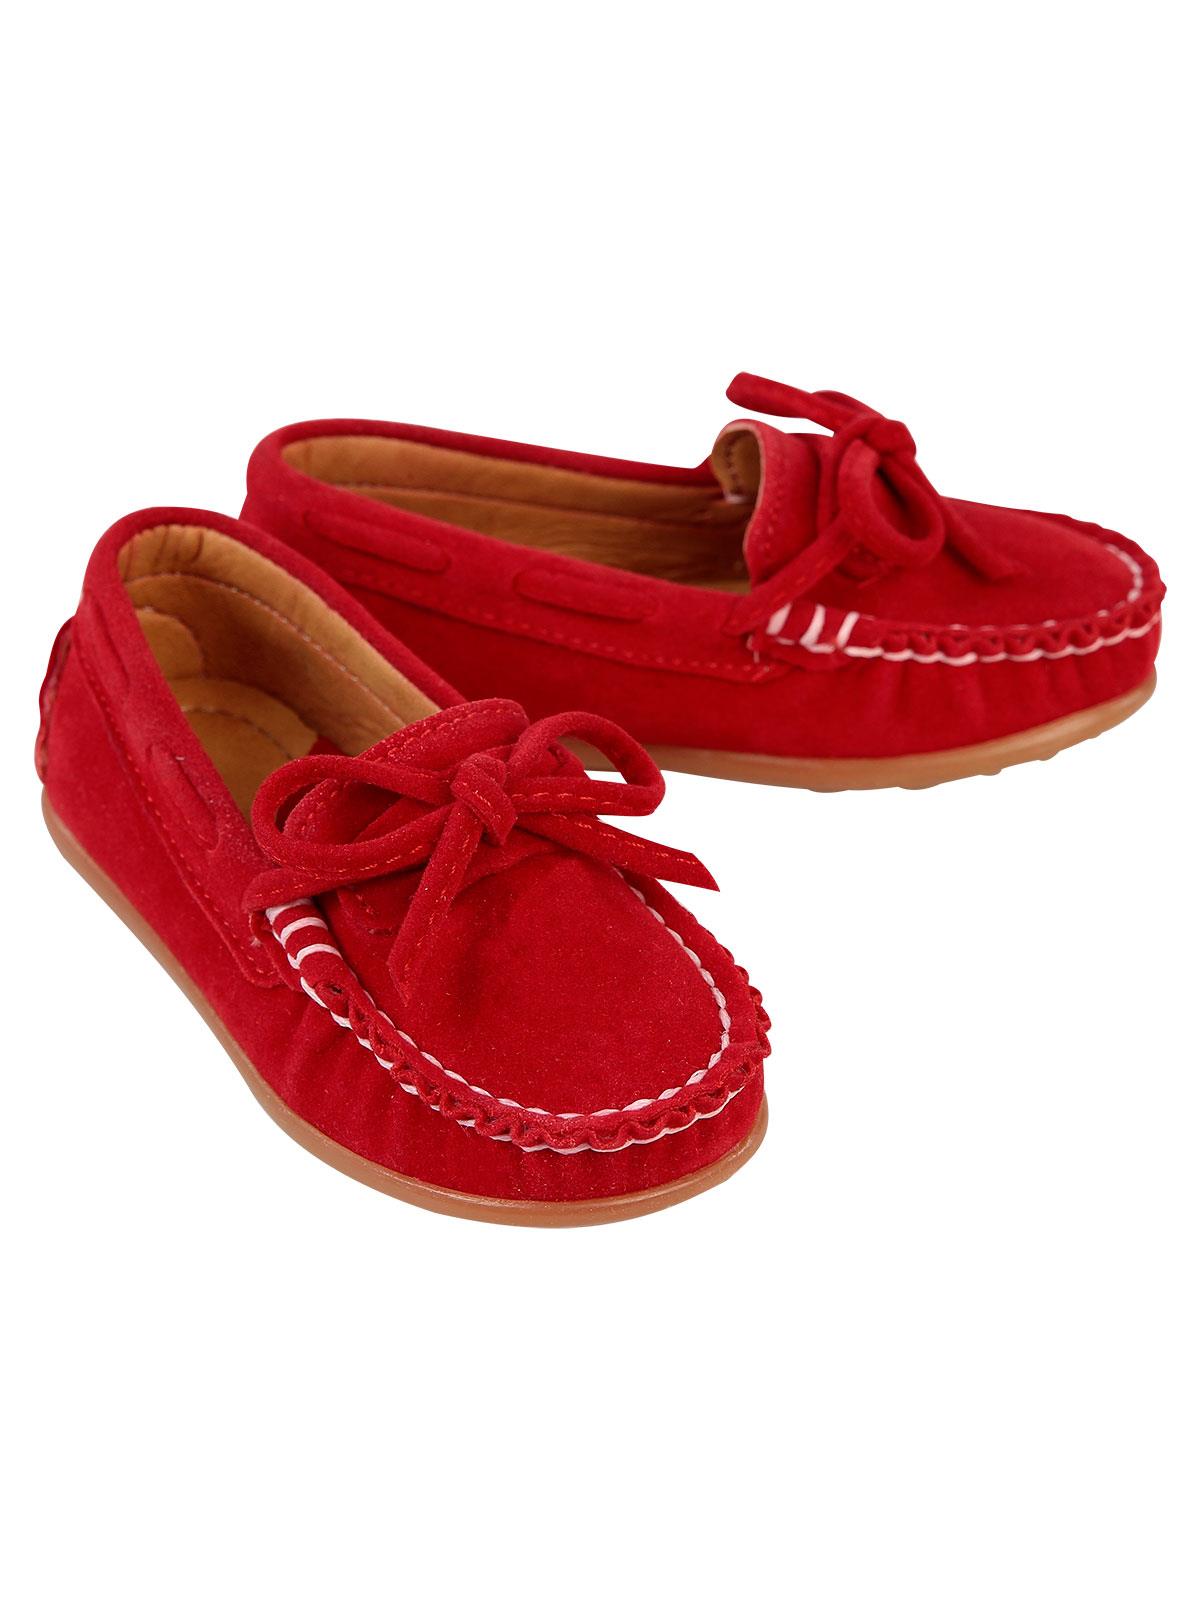 Barbone Erkek Çocuk Süet Ayakkabı 21-25 Numara Kırmızı